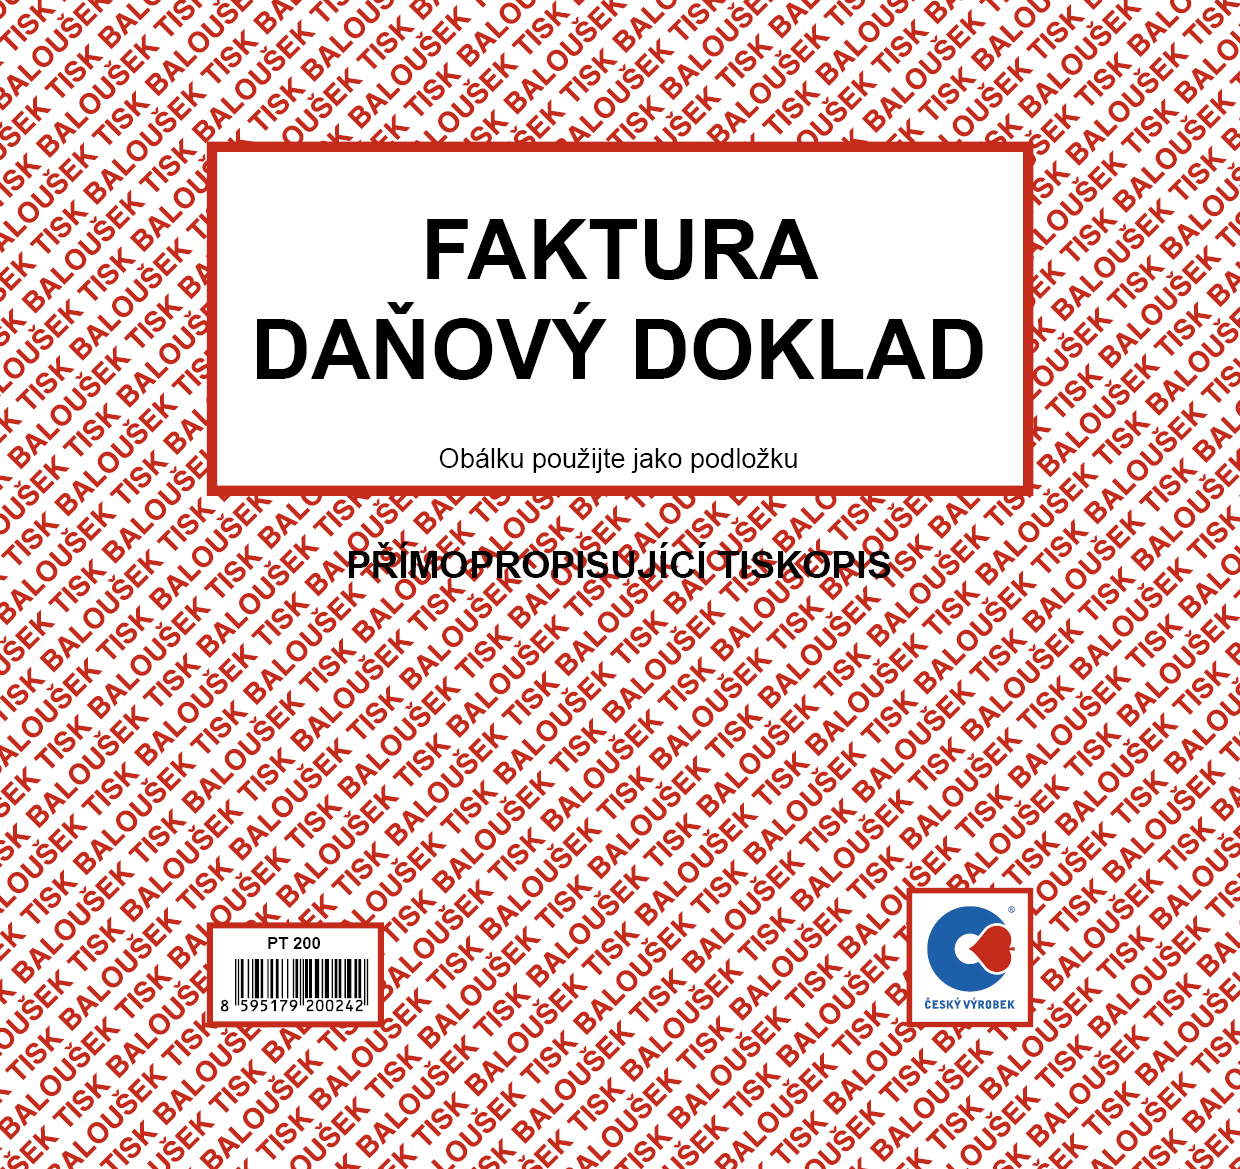 Faktura, daňový doklad, 2/3 A4, samopropis, 50 listů, BALOUŠEK, PT200